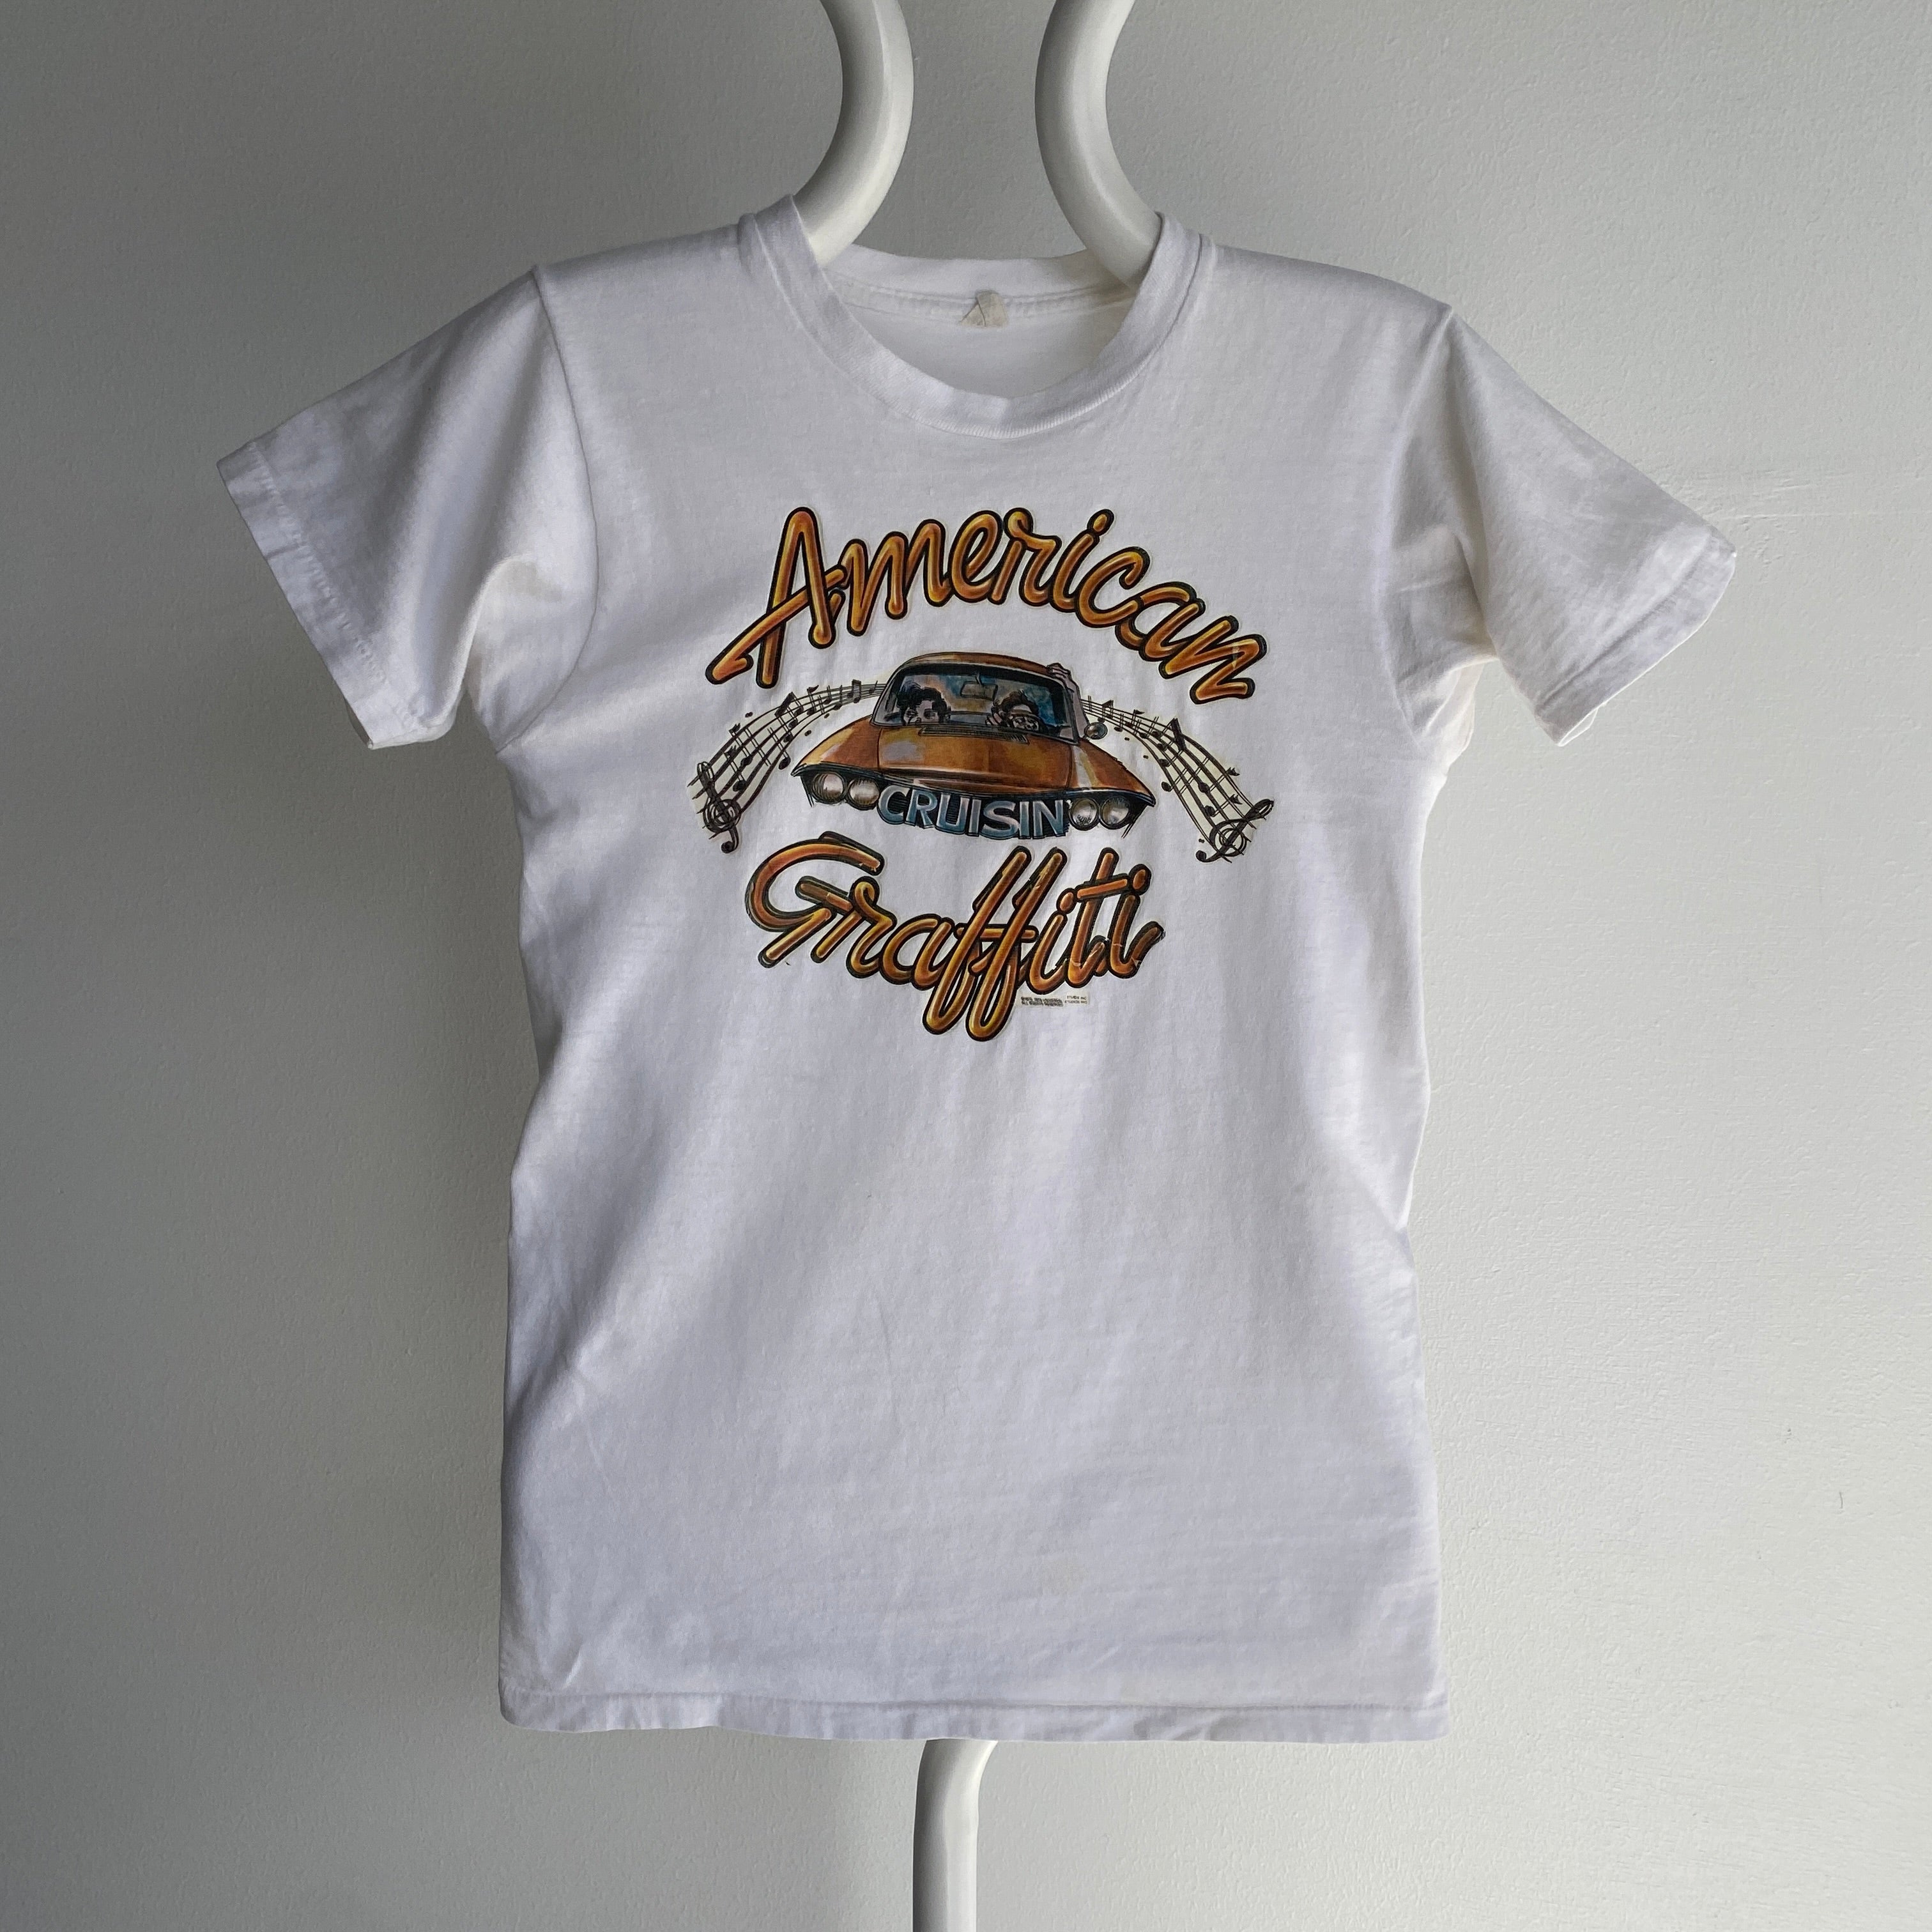 1973 American Graffiti - Le film - T-shirt